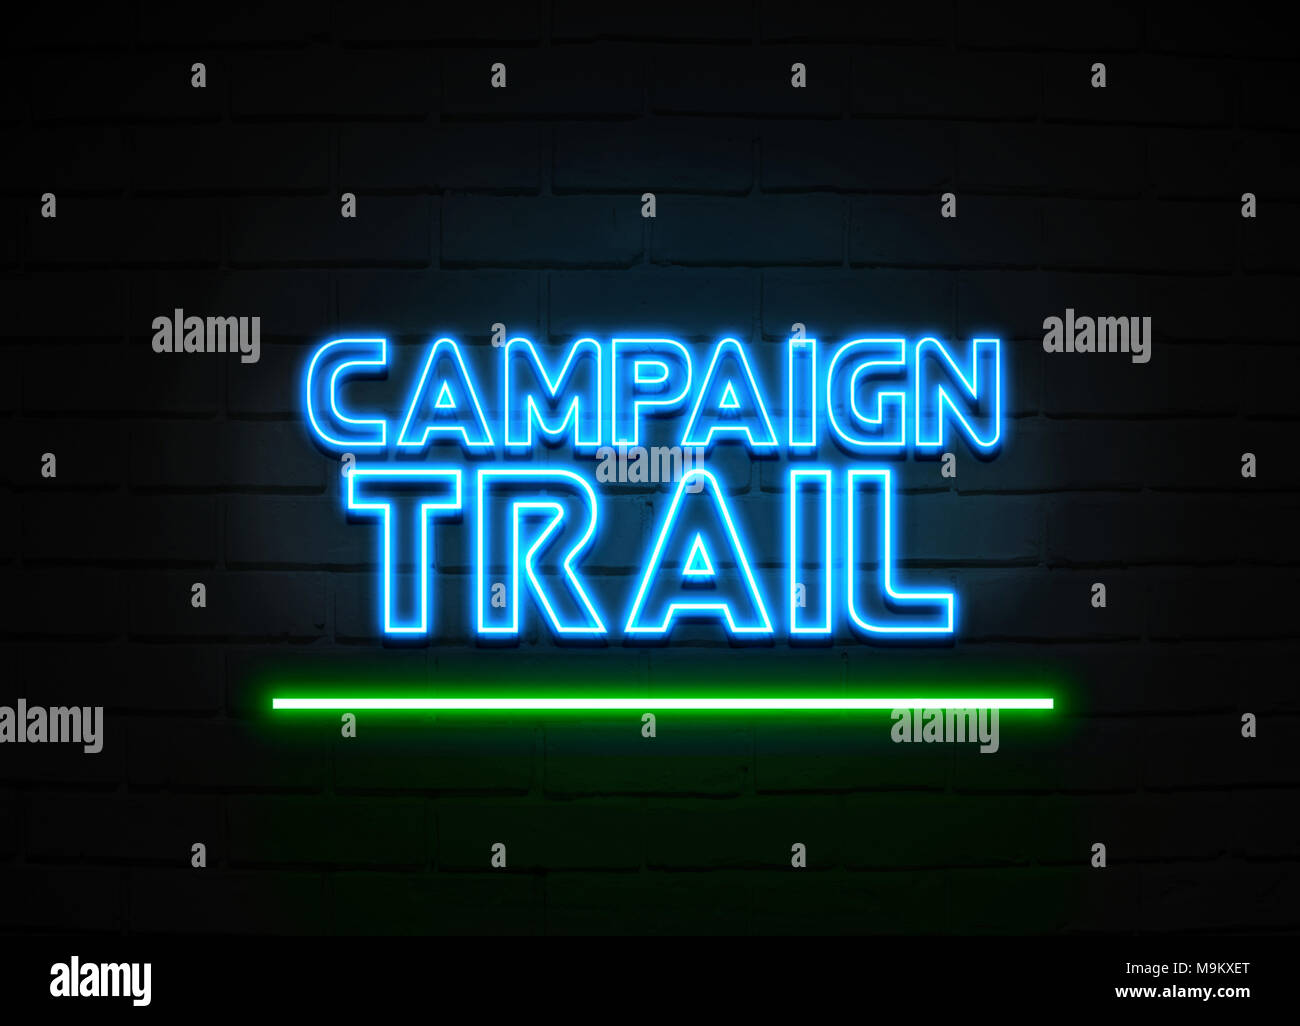 Campaign Trail Leuchtreklame - glühende Leuchtreklame auf brickwall Wand - 3D-Royalty Free Stock Illustration dargestellt. Stockfoto